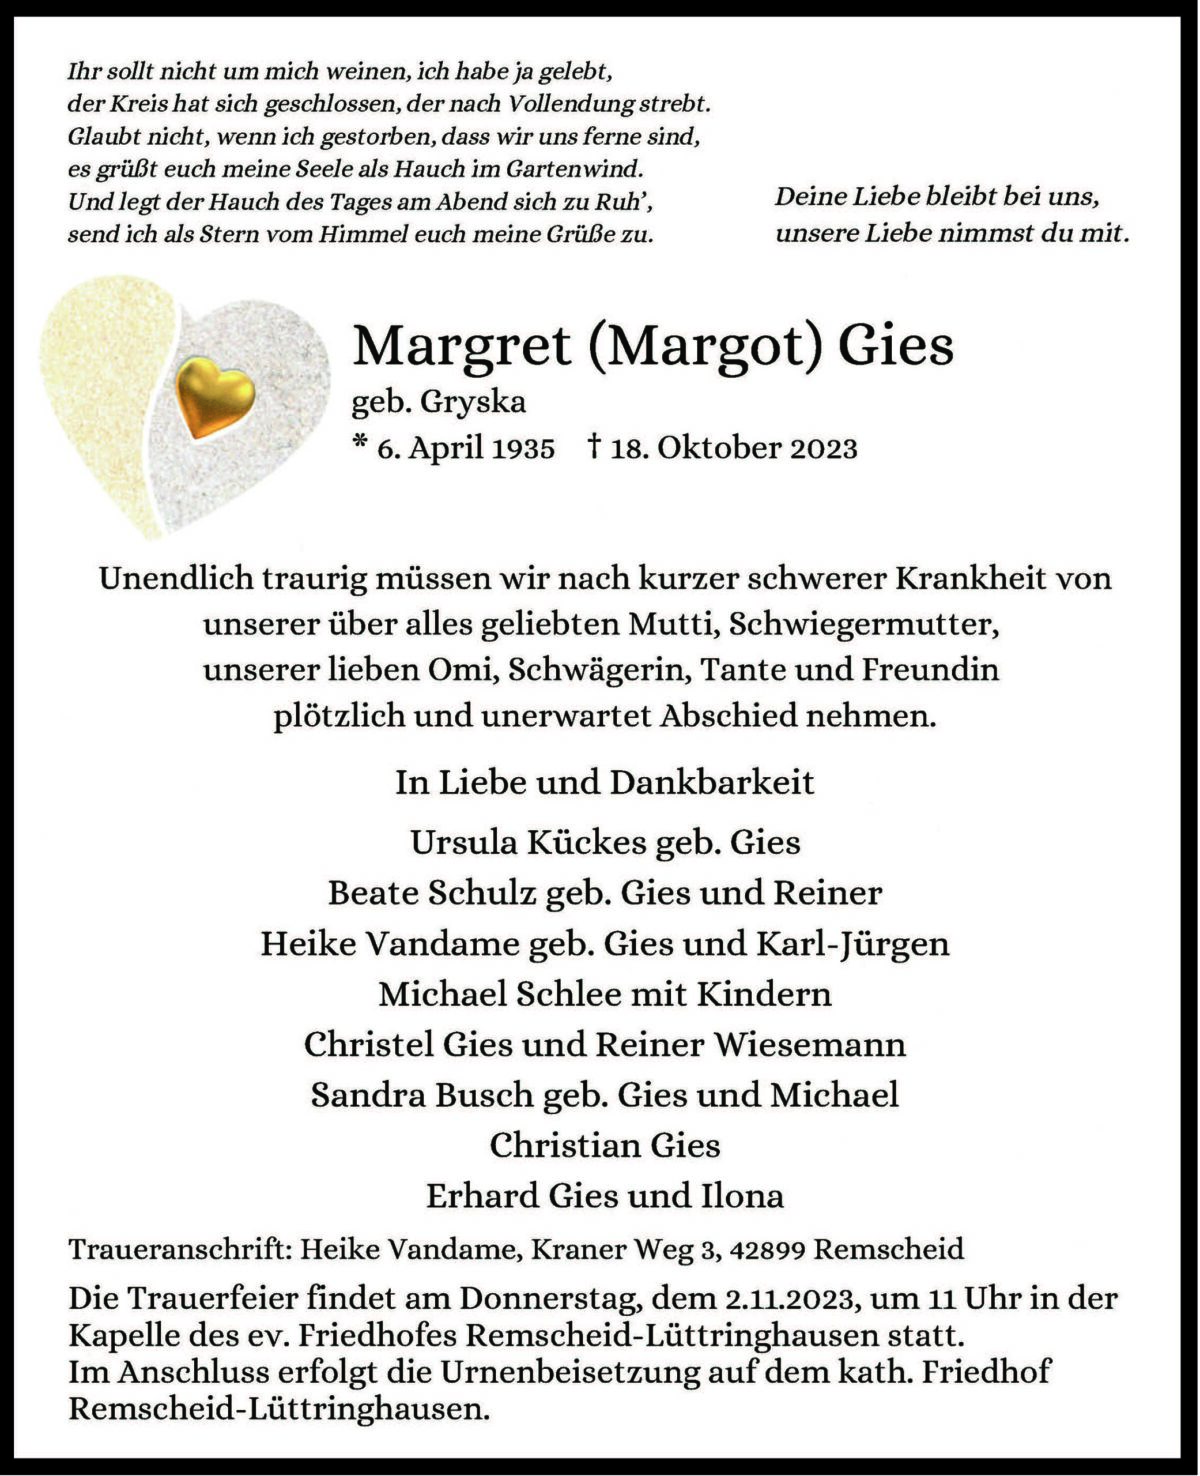 Margret (Margot) Gies